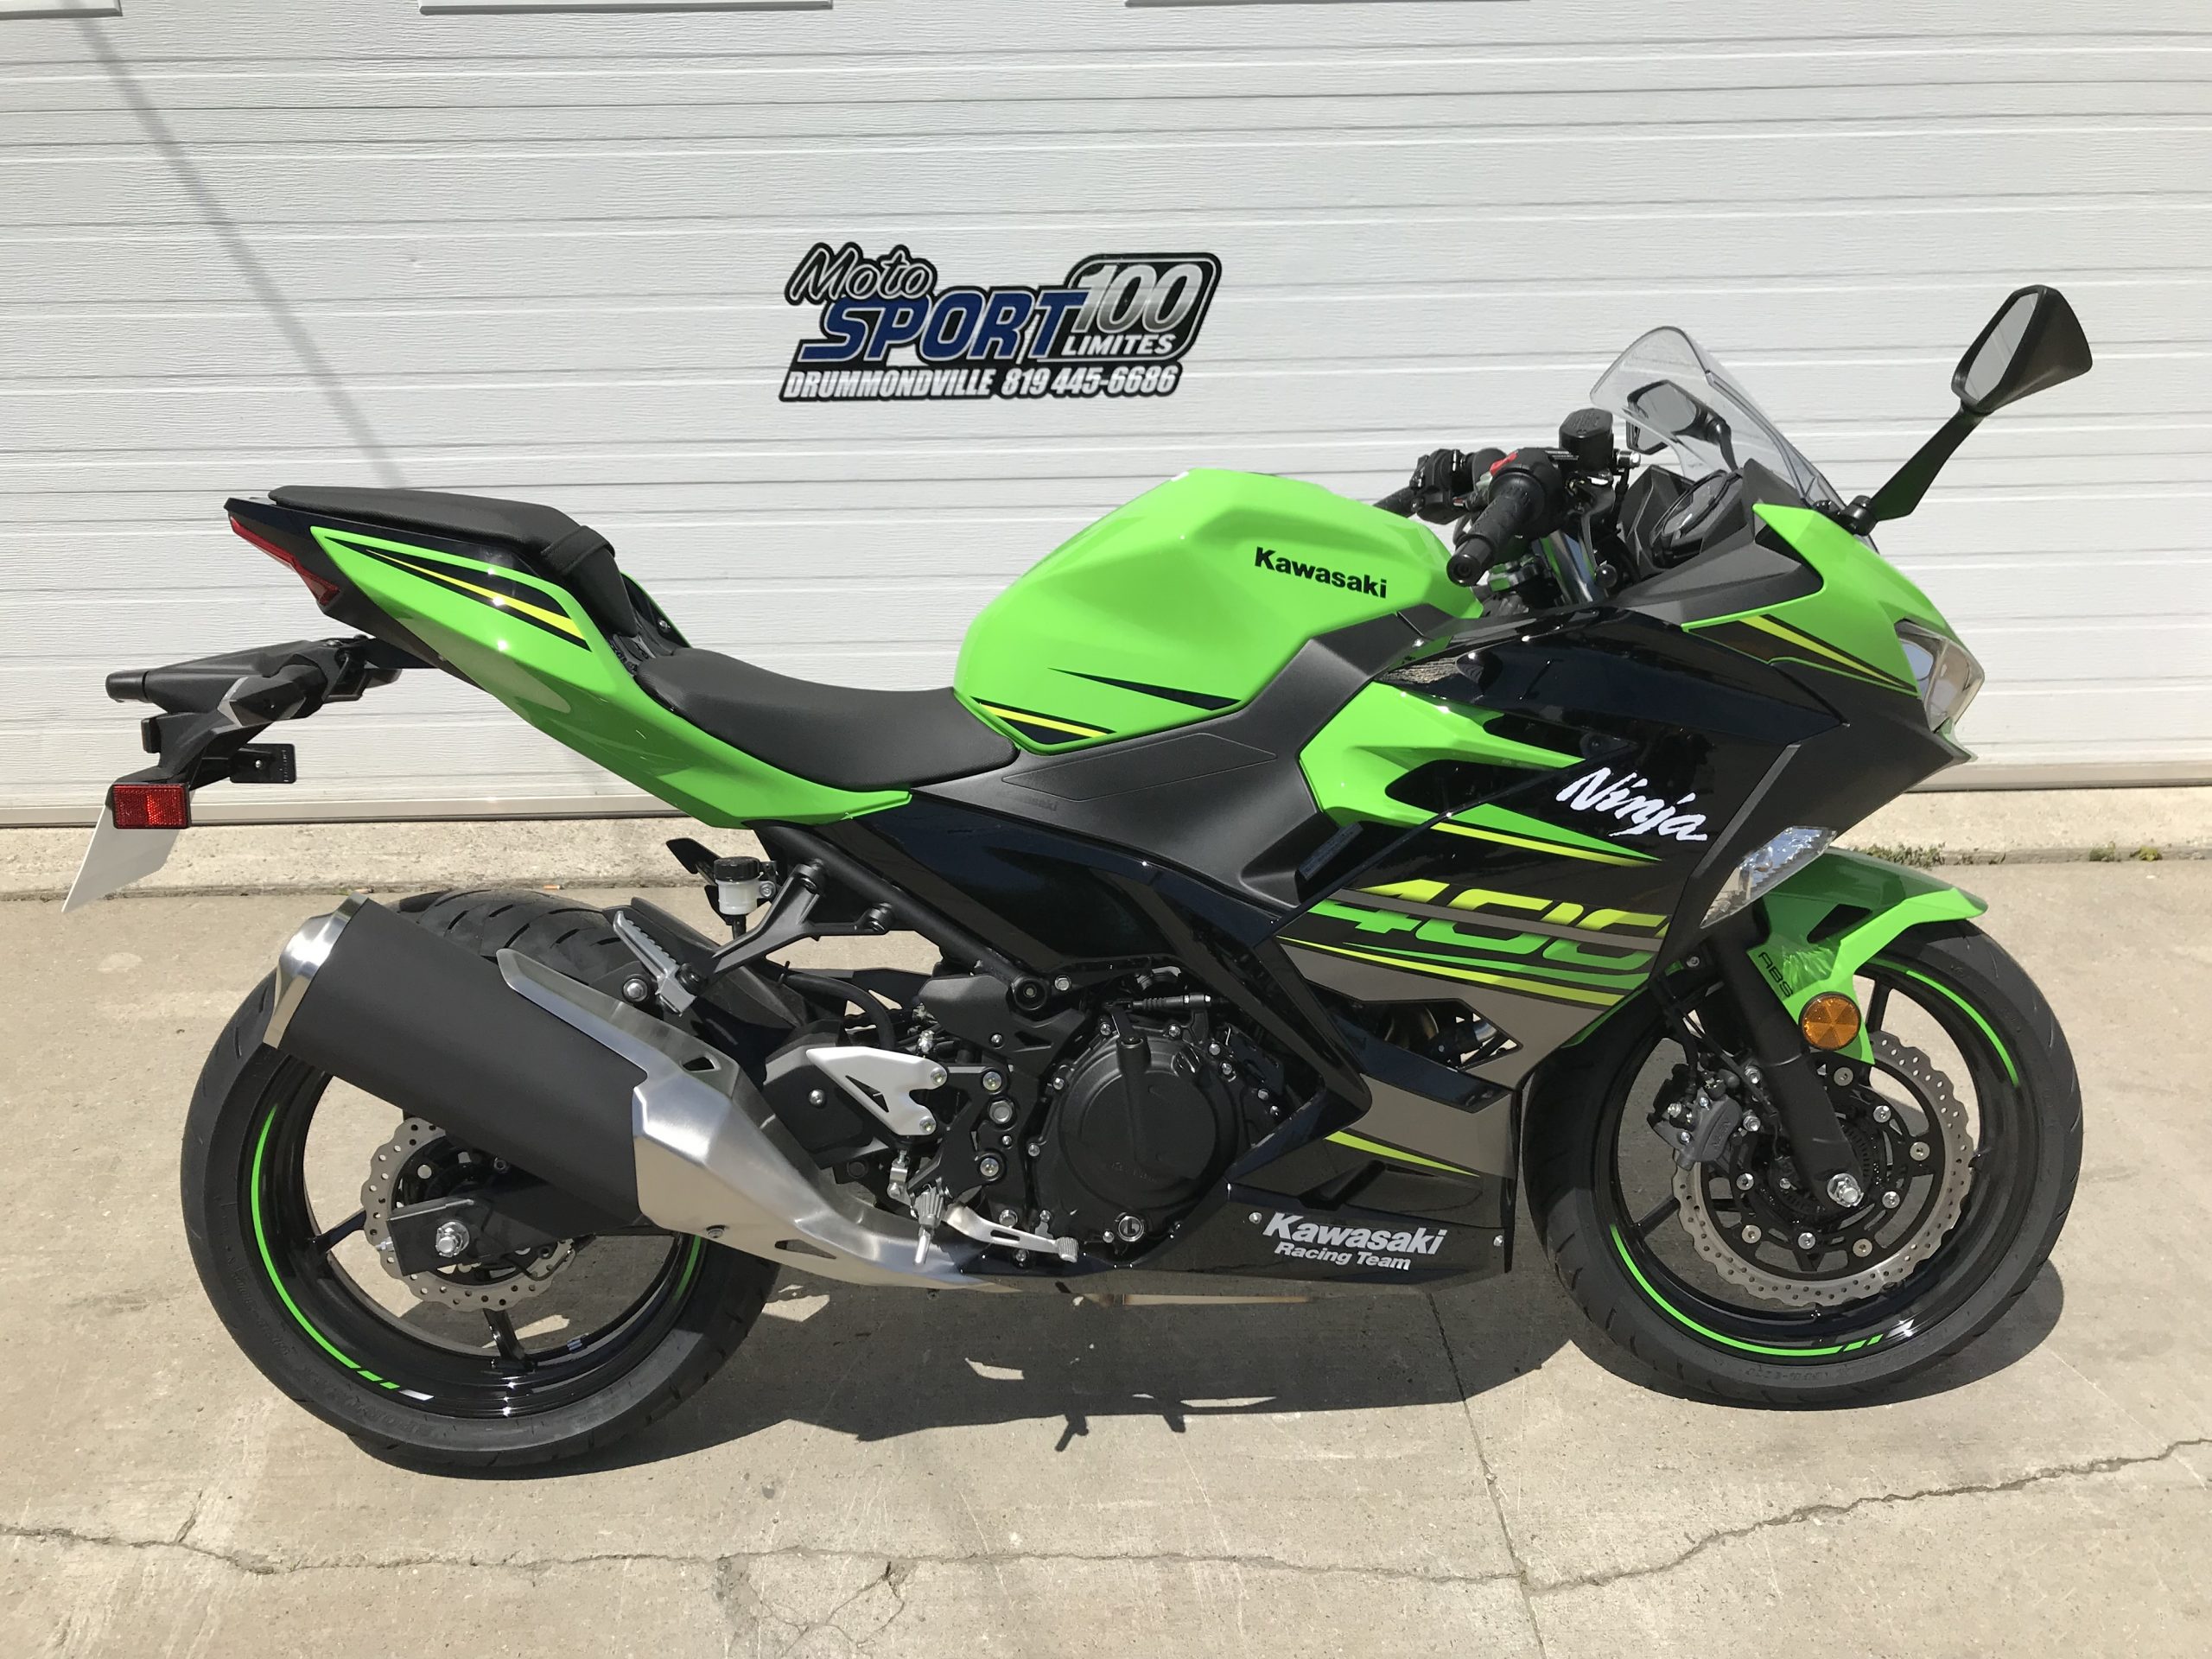 KAwasaki Ninja 400 KRT 2018 (2) - Moto Sport 100 limites